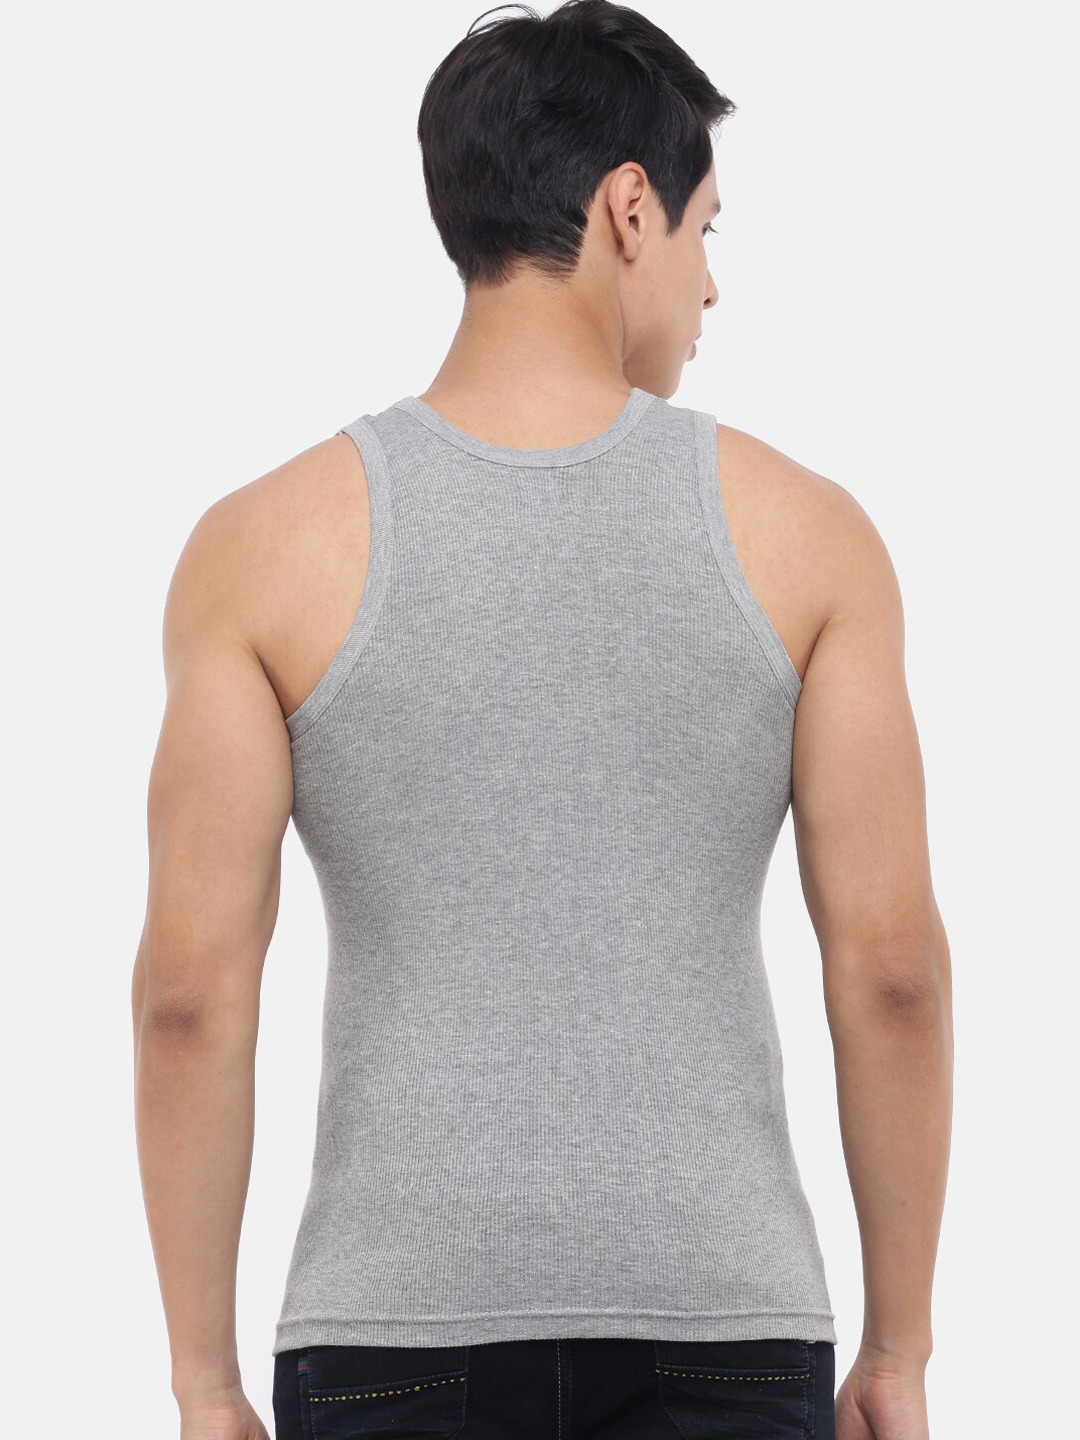 Clothing Innerwear Vests | Dollar Bigboss Men Pack Of 10 Grey Melange Solid Pure Cotton Basic Vests - CV97854